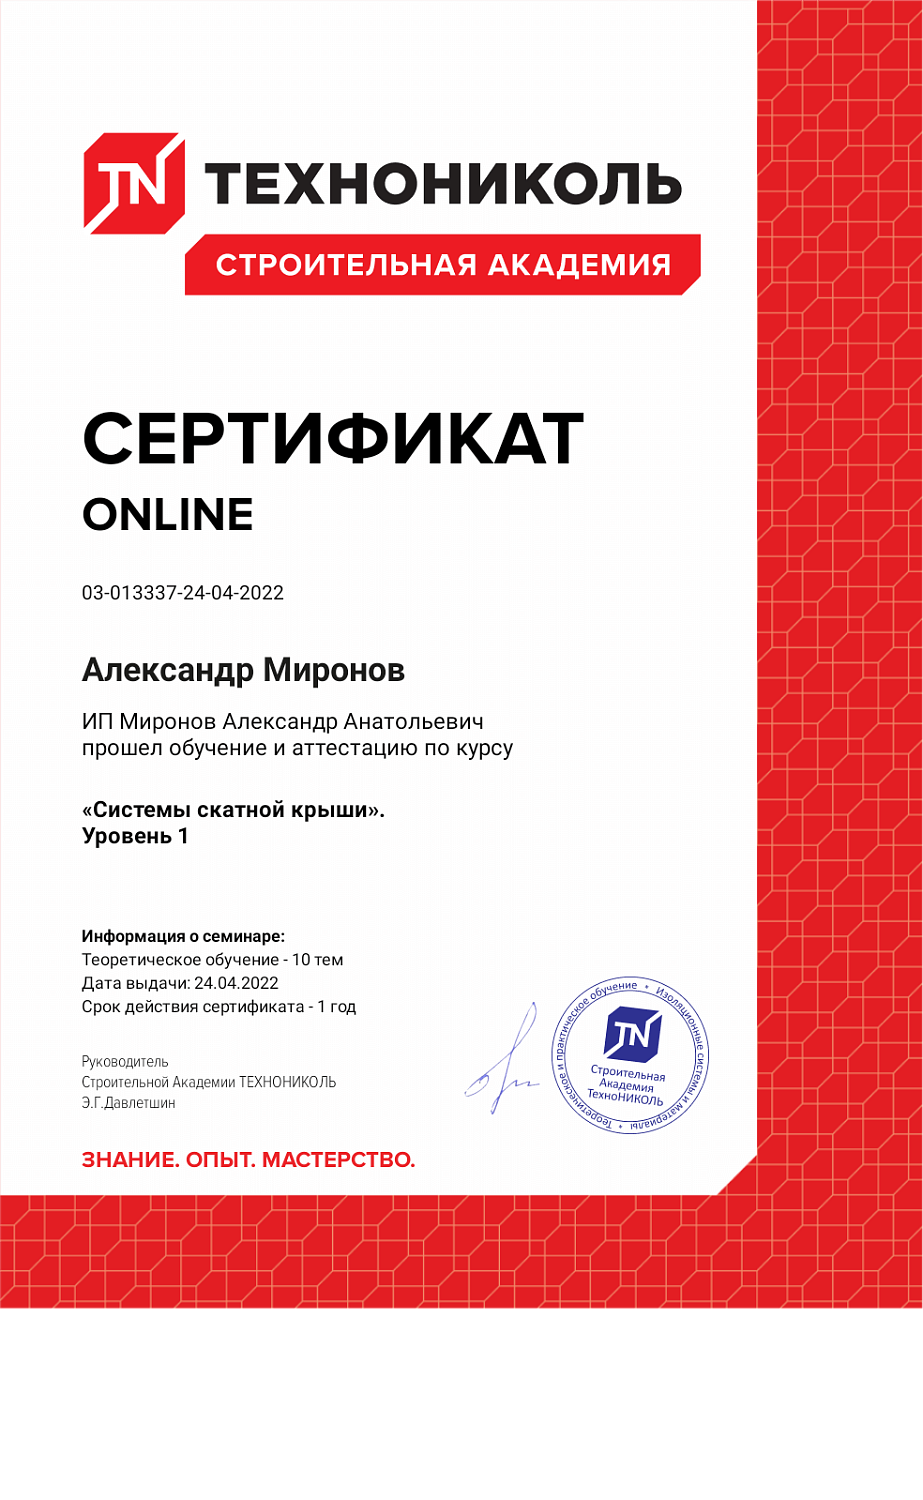 Сертификат о прохождении онлайн-курса по скатной кровле от компании Технониколь